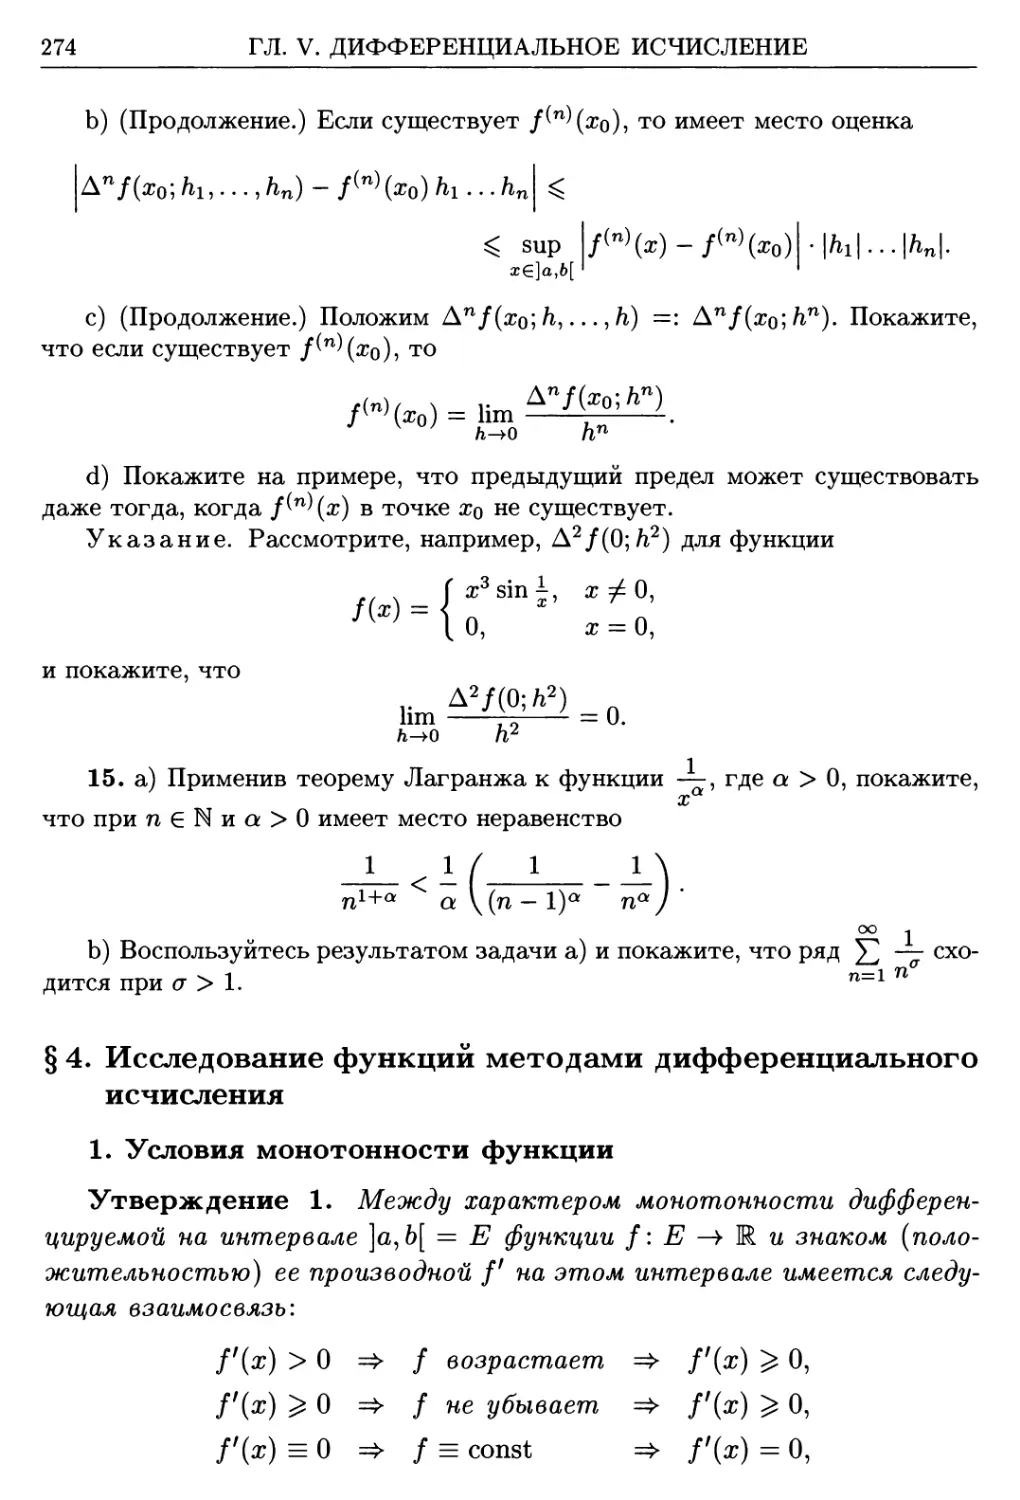 §4. Исследование функций методами дифференциального исчисления